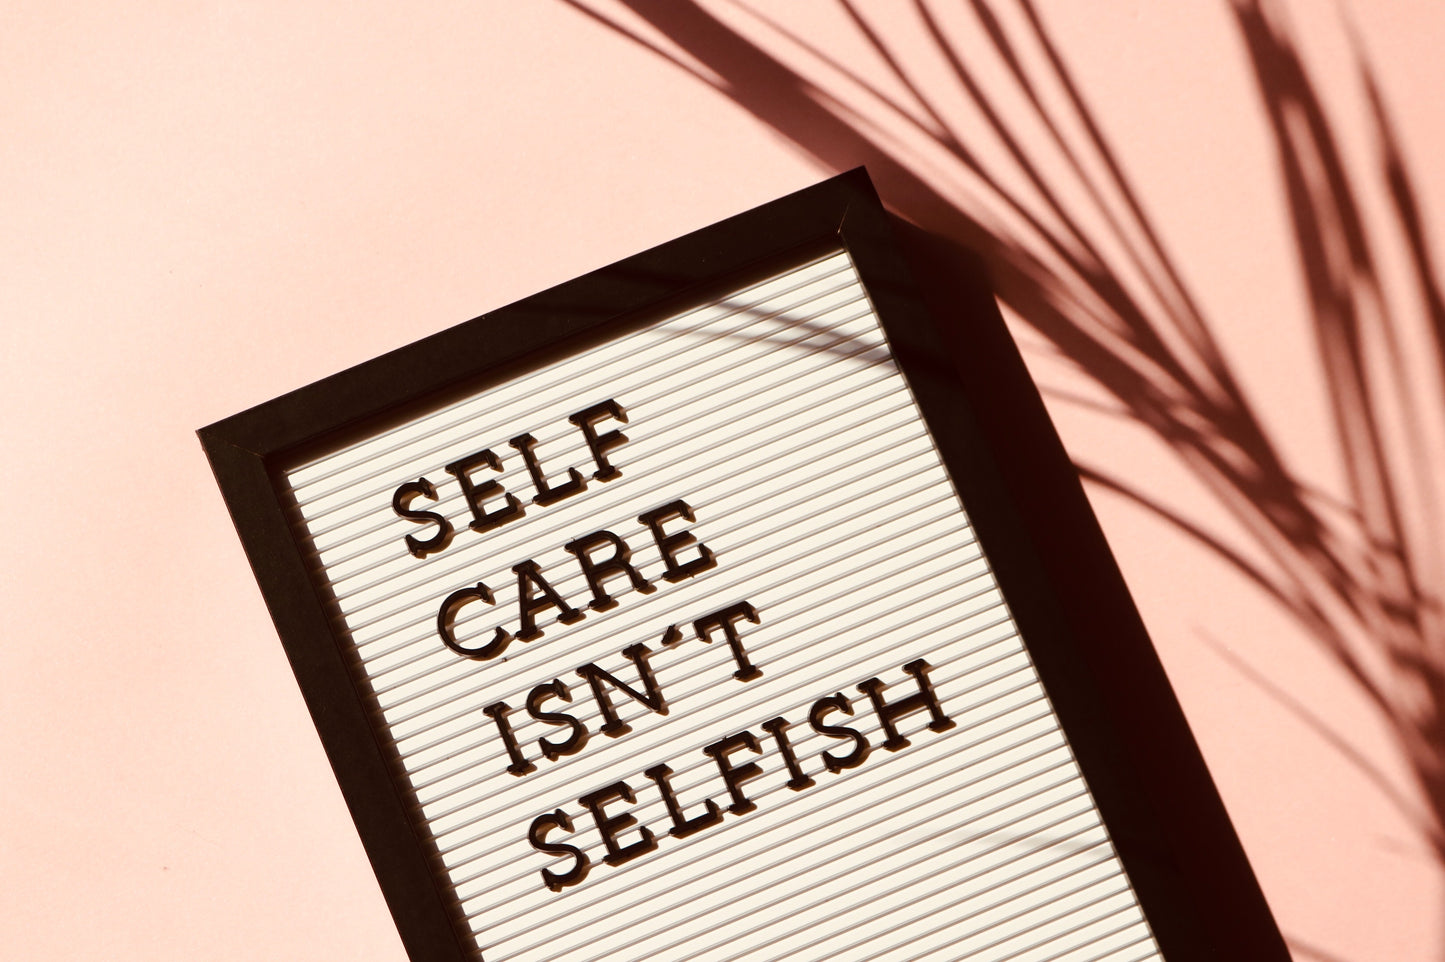 self care isn't selfish: detox foot pads self care routine